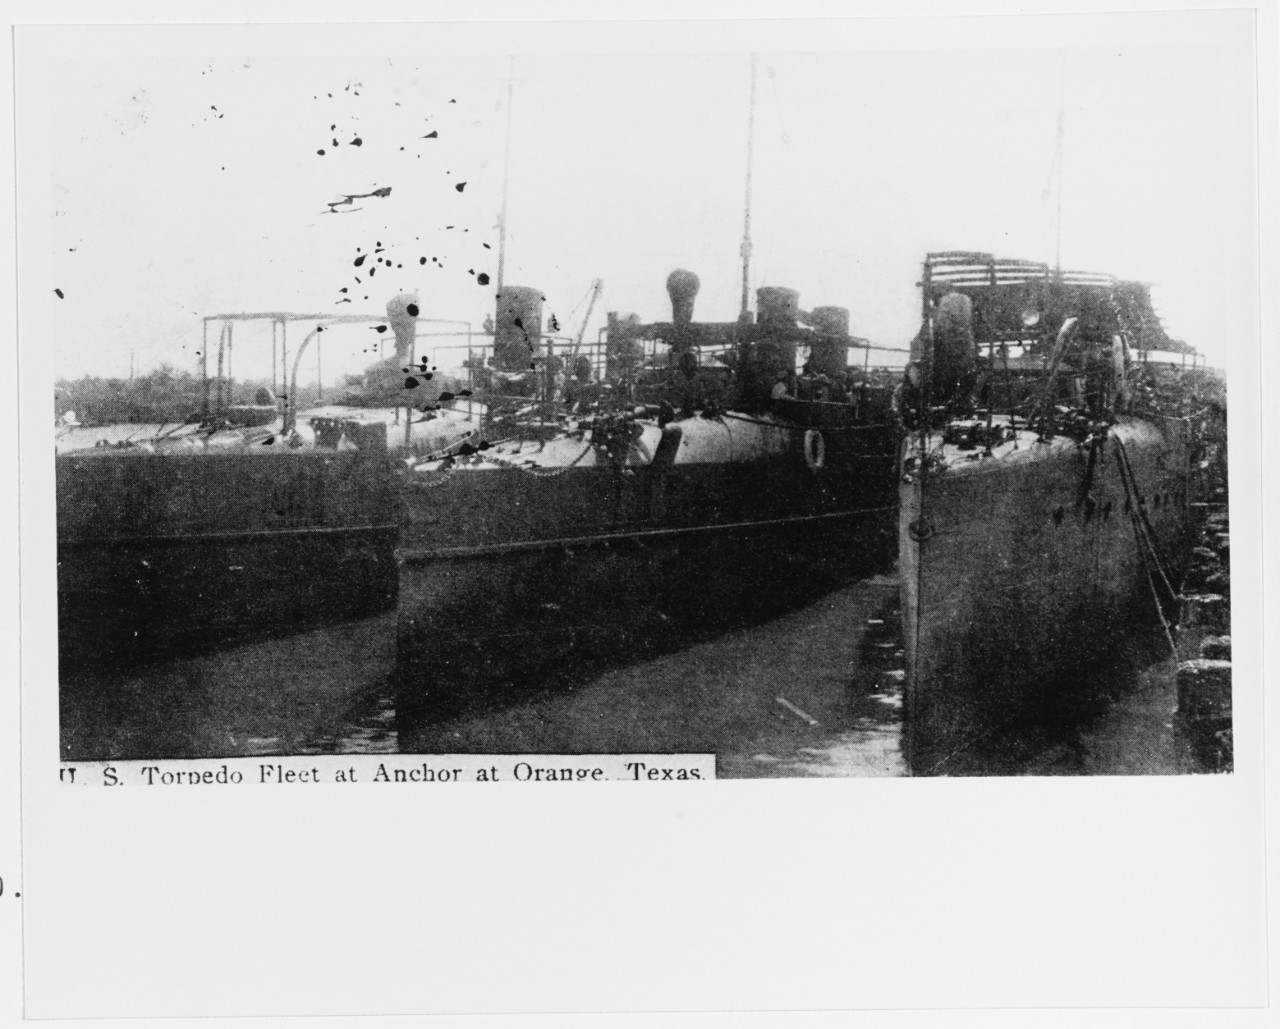 Three U.S. Navy Torpedo Boats